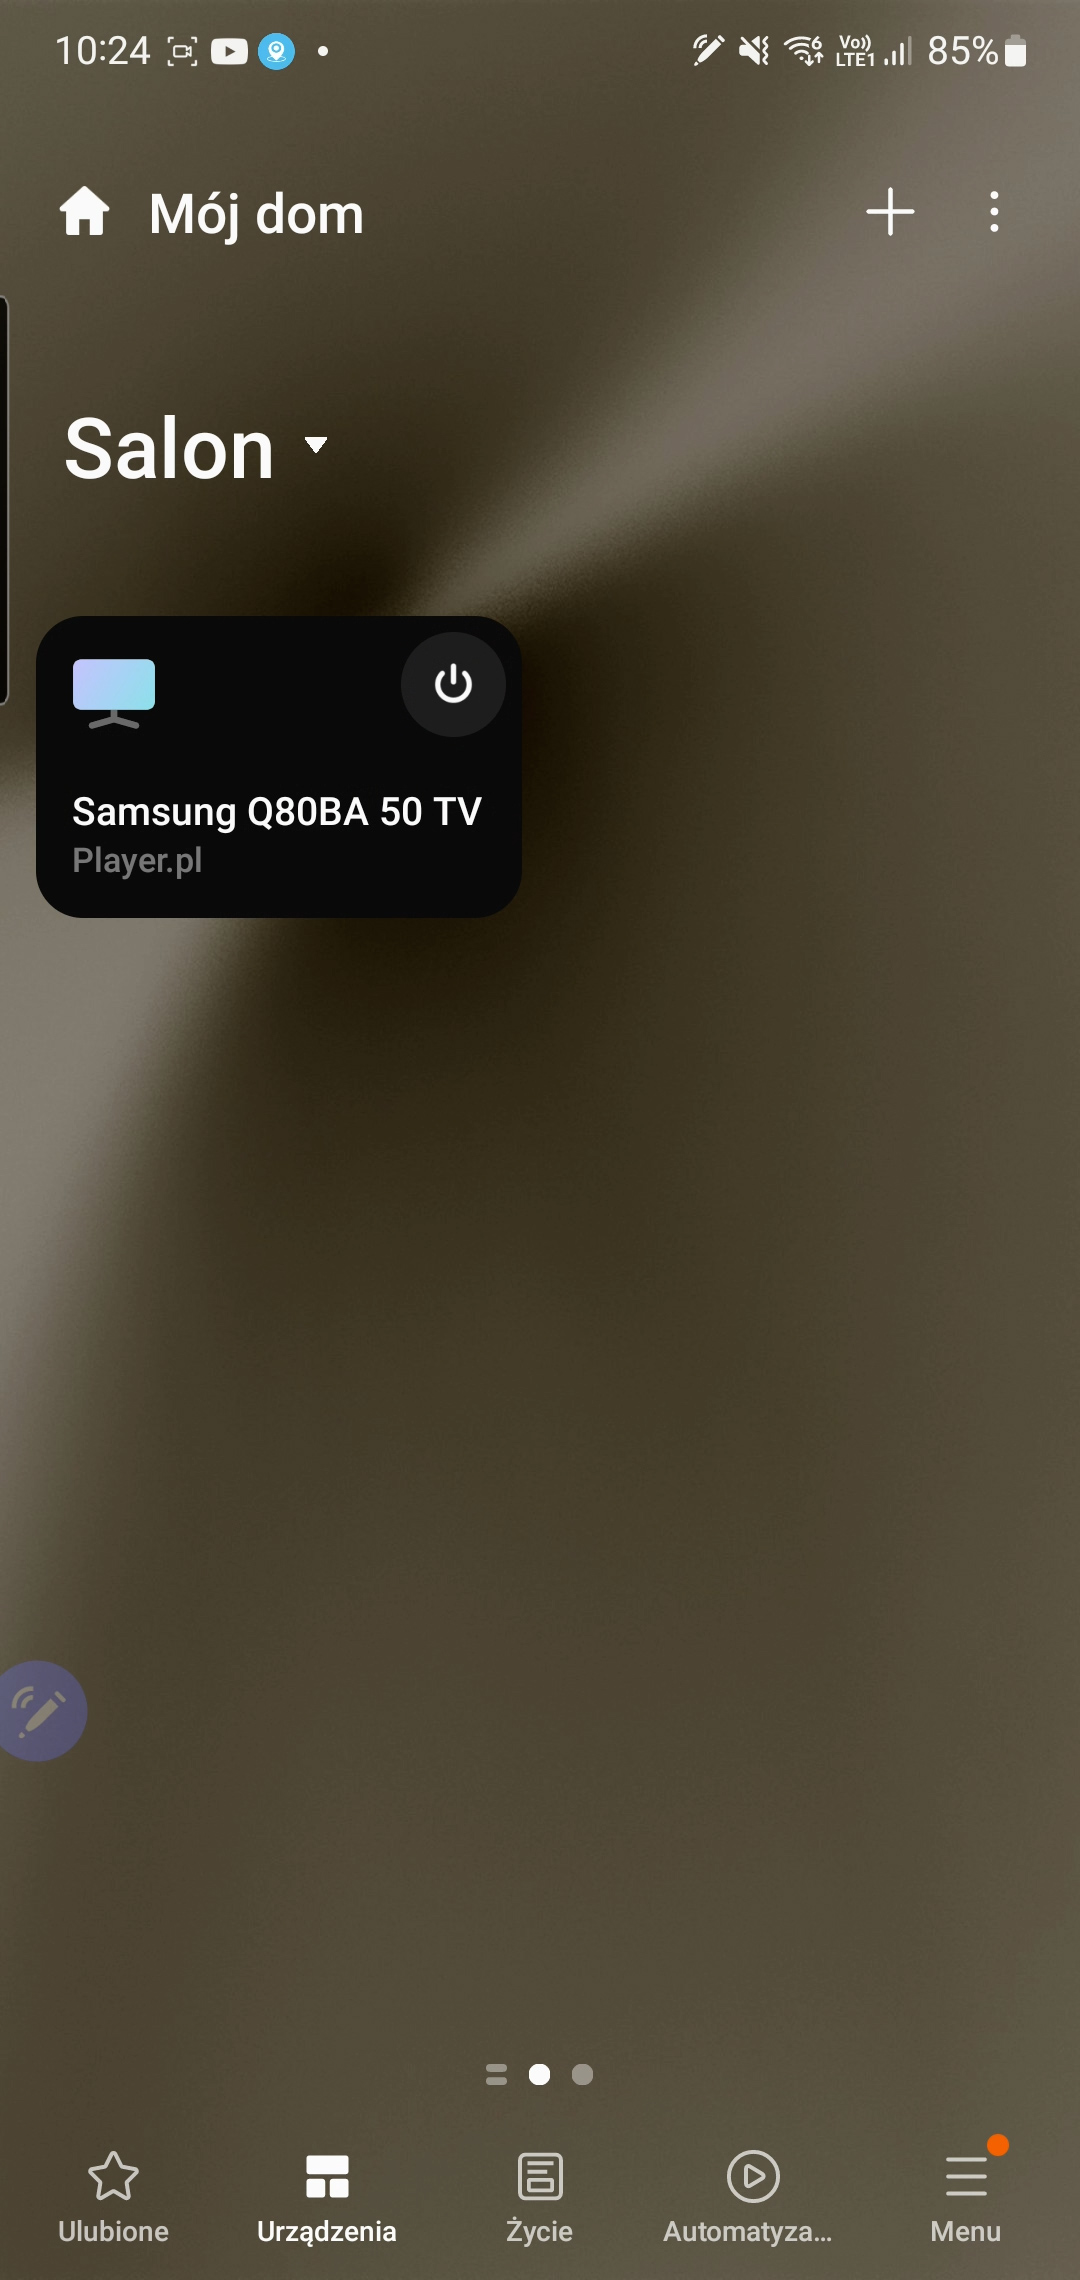 Recenzja telewizora Samsung Q80B w wersji 50 cali. Może warto dopłacić do większej przekątnej?